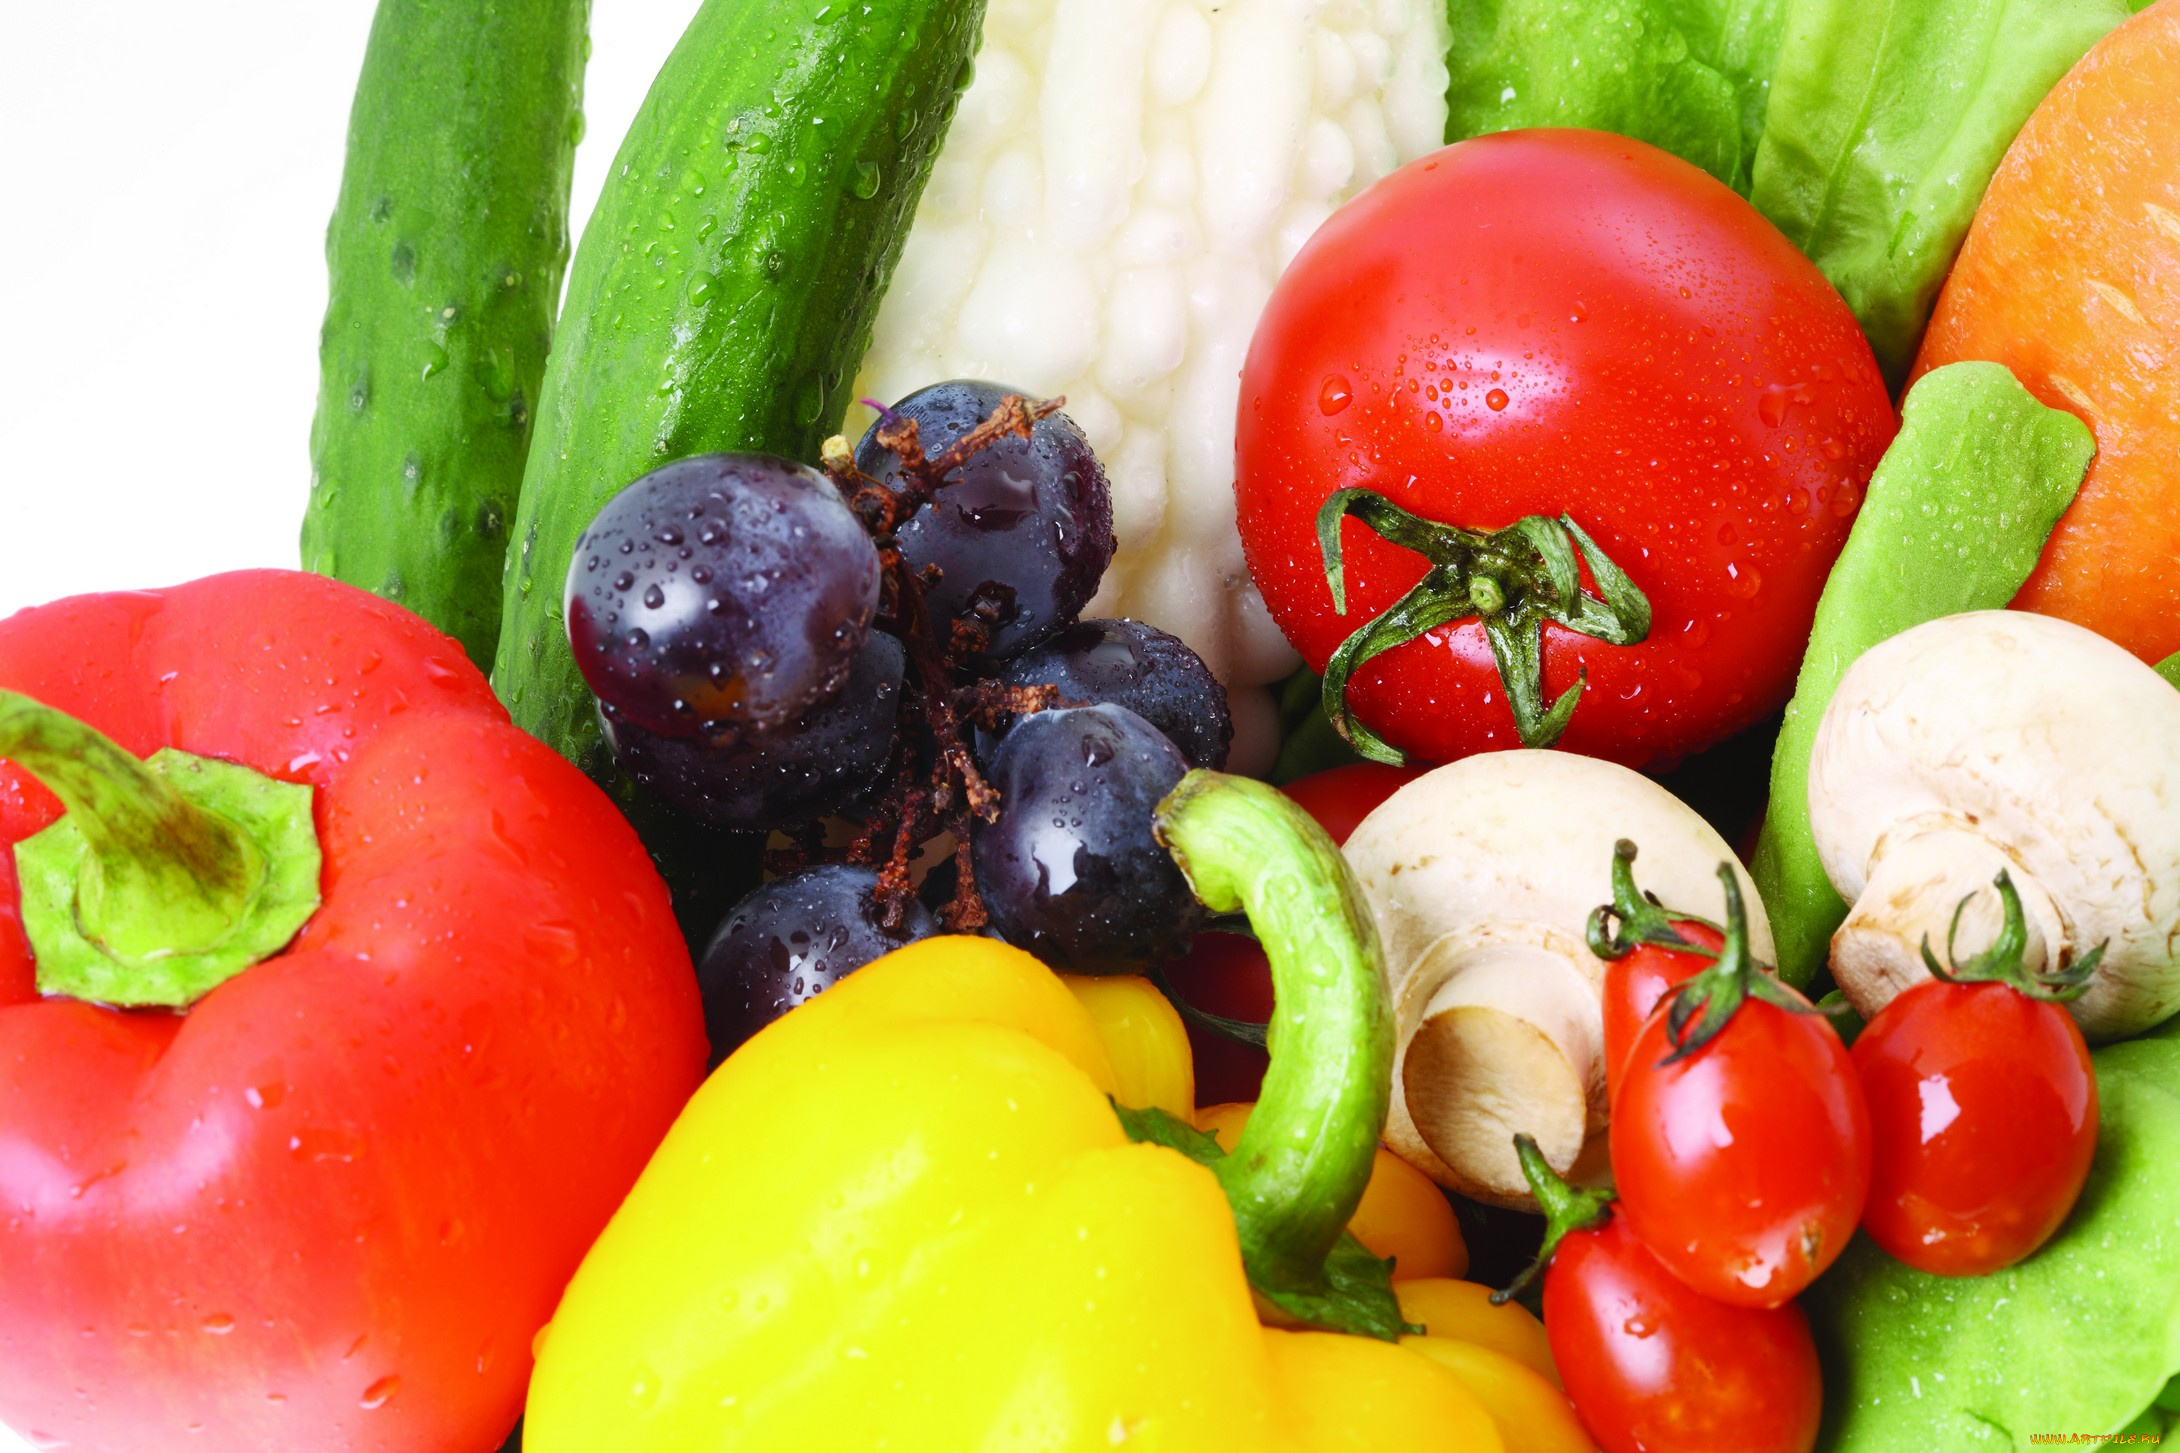 еда, разное, овощи, фрукты, болгарский, перец, красный, зелёный, оранжевый, морковь, виноград, черри, помидоры, шампиньоны, грибы, огурцы, листья, салата, томаты